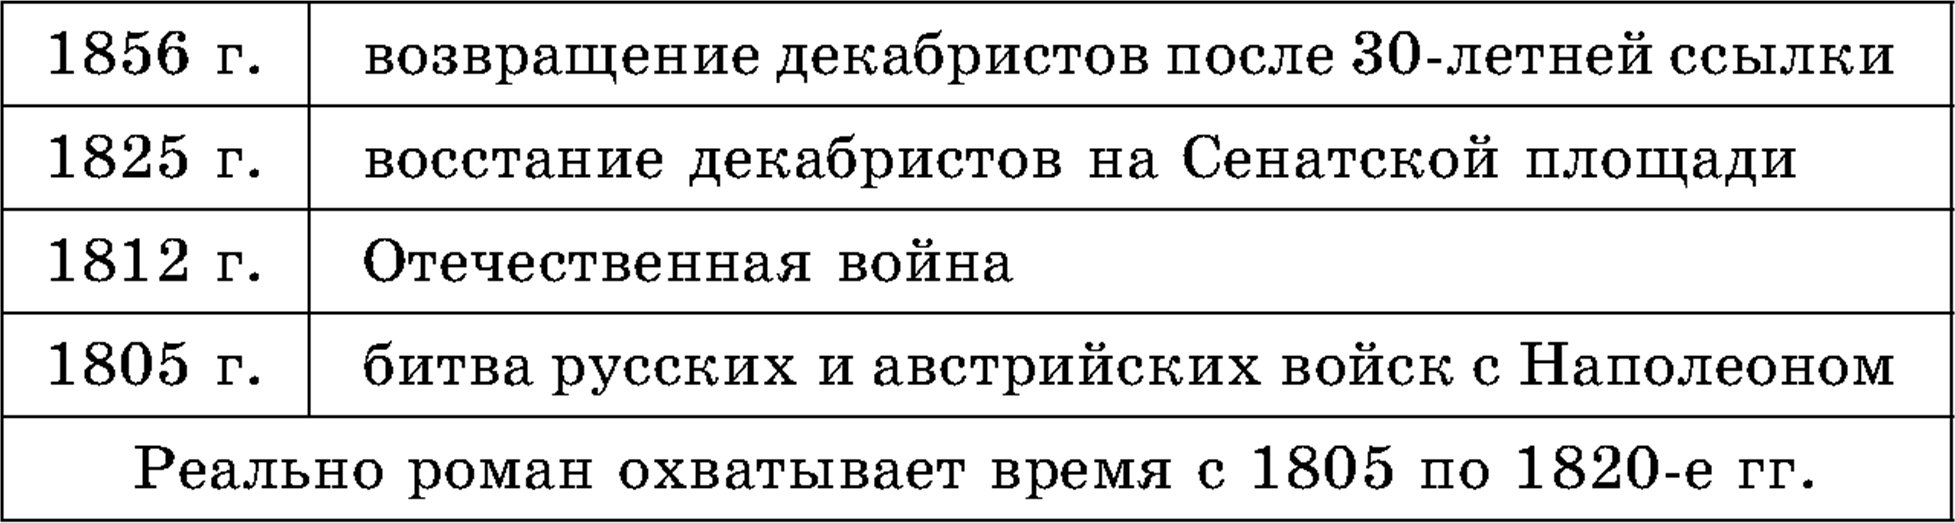 Лев Николаевич Толстой, Роман-эпопея «Война и мир»